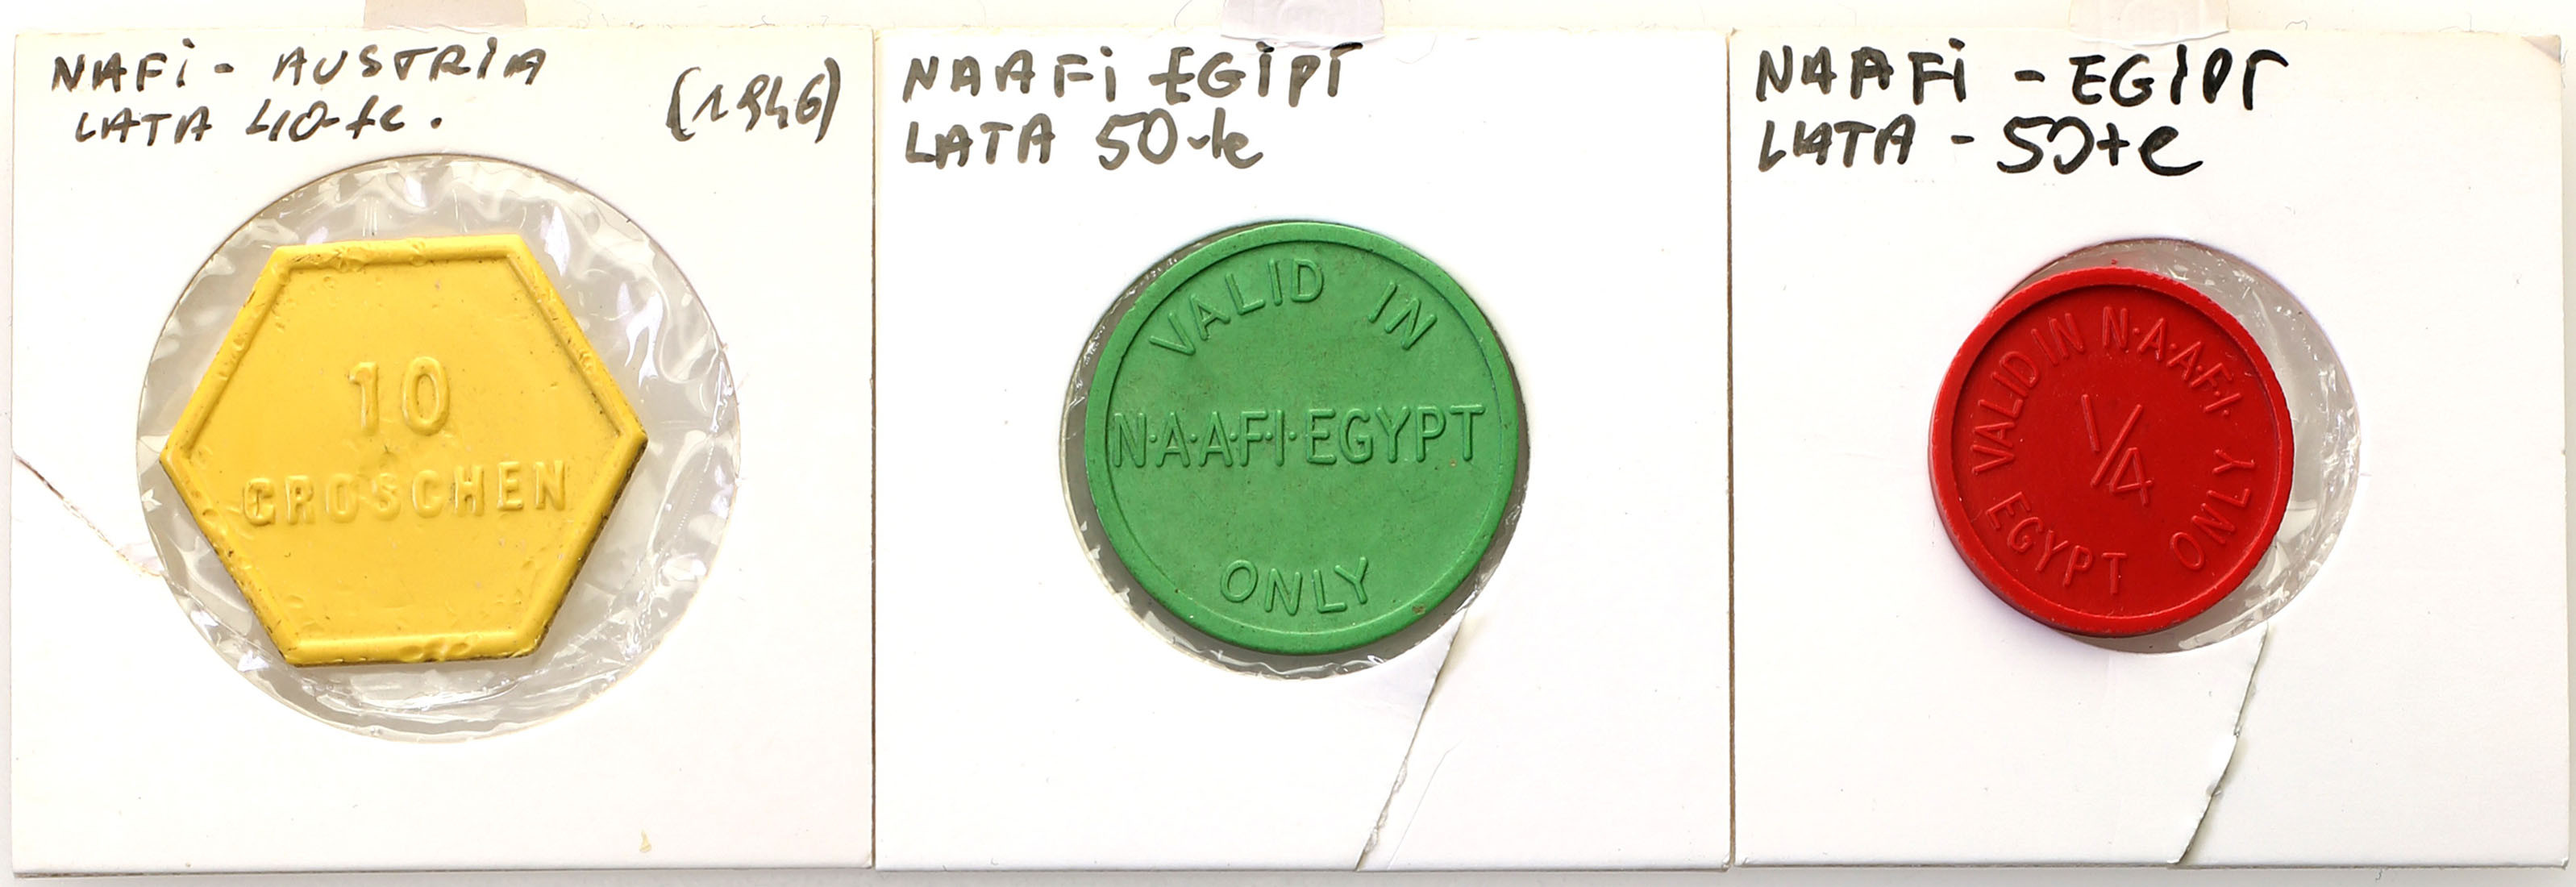 Wielka Brytania. NAFFI - Egipt, Austria, zestaw 3 żetonów